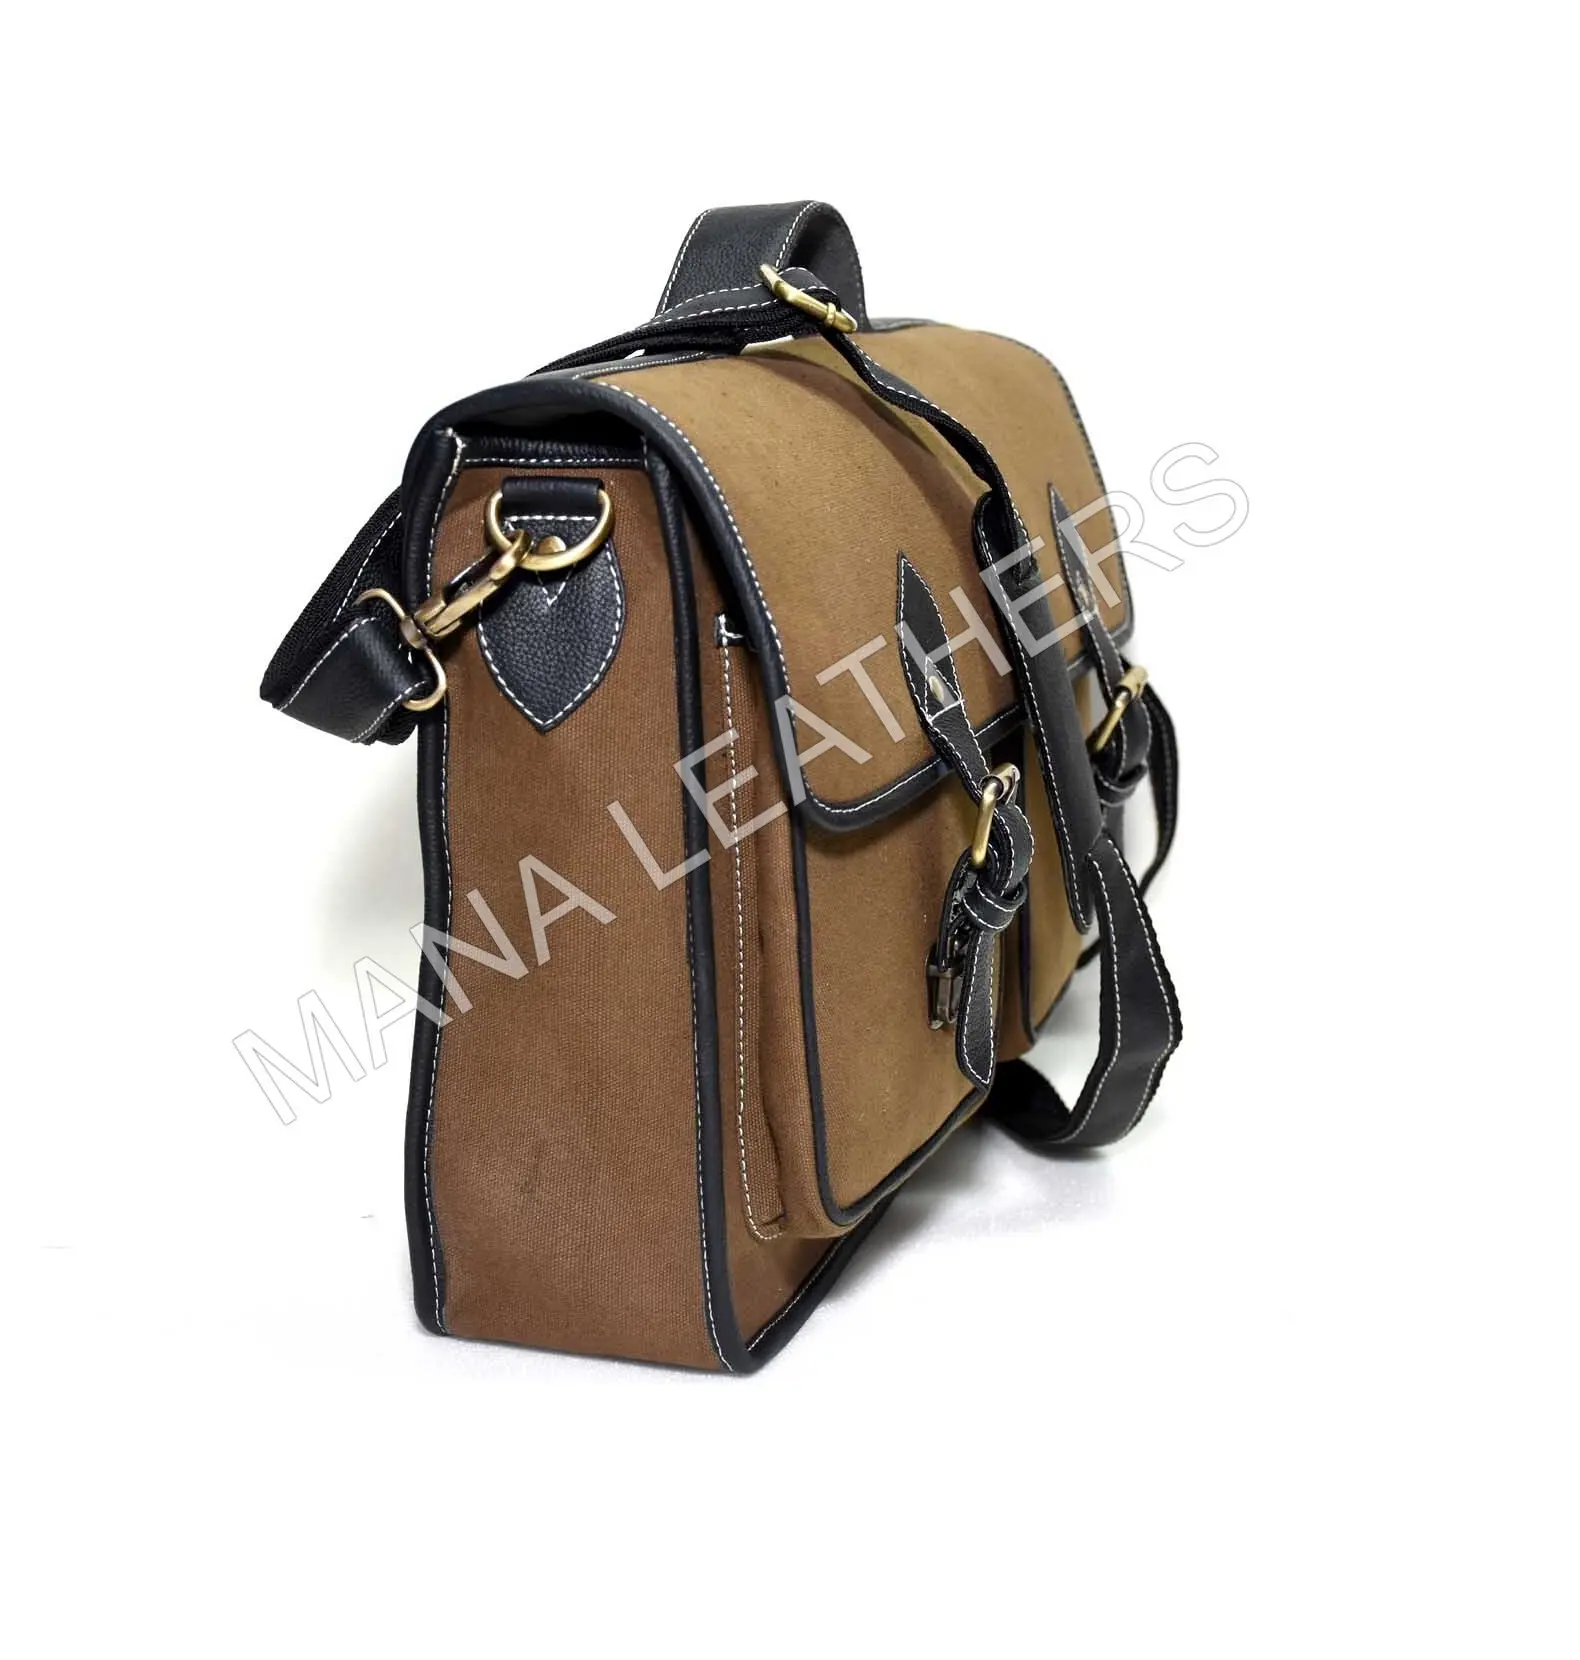 Omuz askıları ile hafif PREMIUM kalite tuval erkek çantası pirinç donanım/özel tasarım kanvas çanta